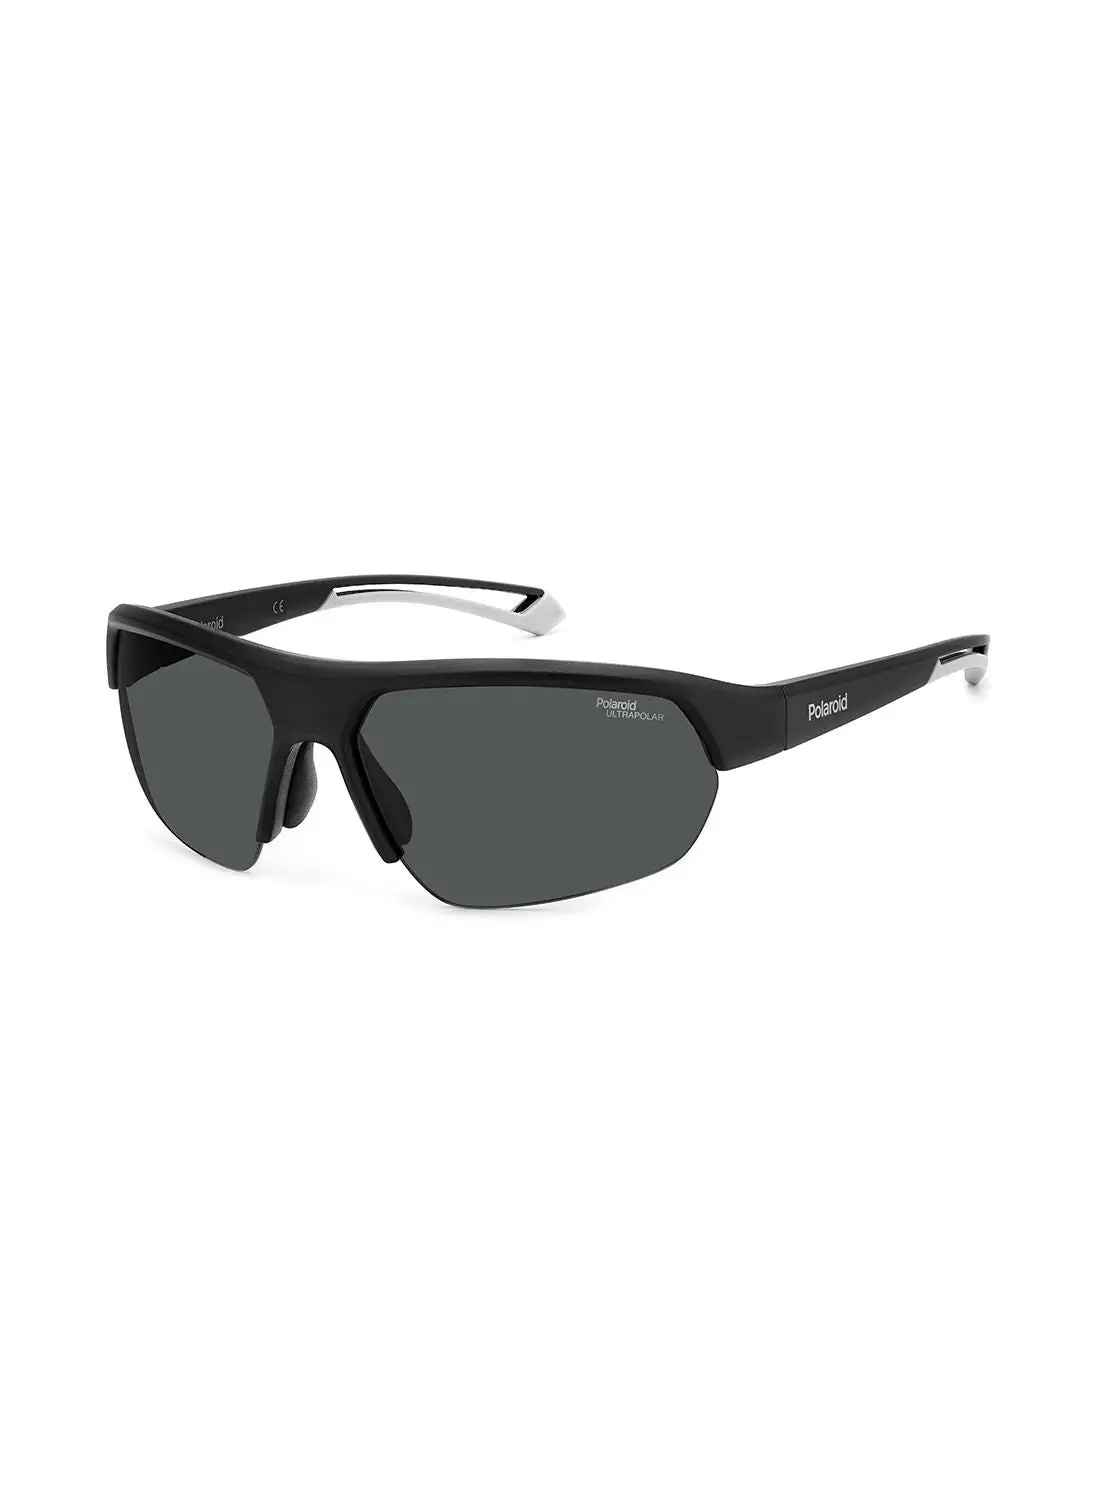 Polaroid Unisex UV Protection Rectangular Sunglasses - Pld 7048/S Mtt Black 65 - Lens Size: 65 Mm